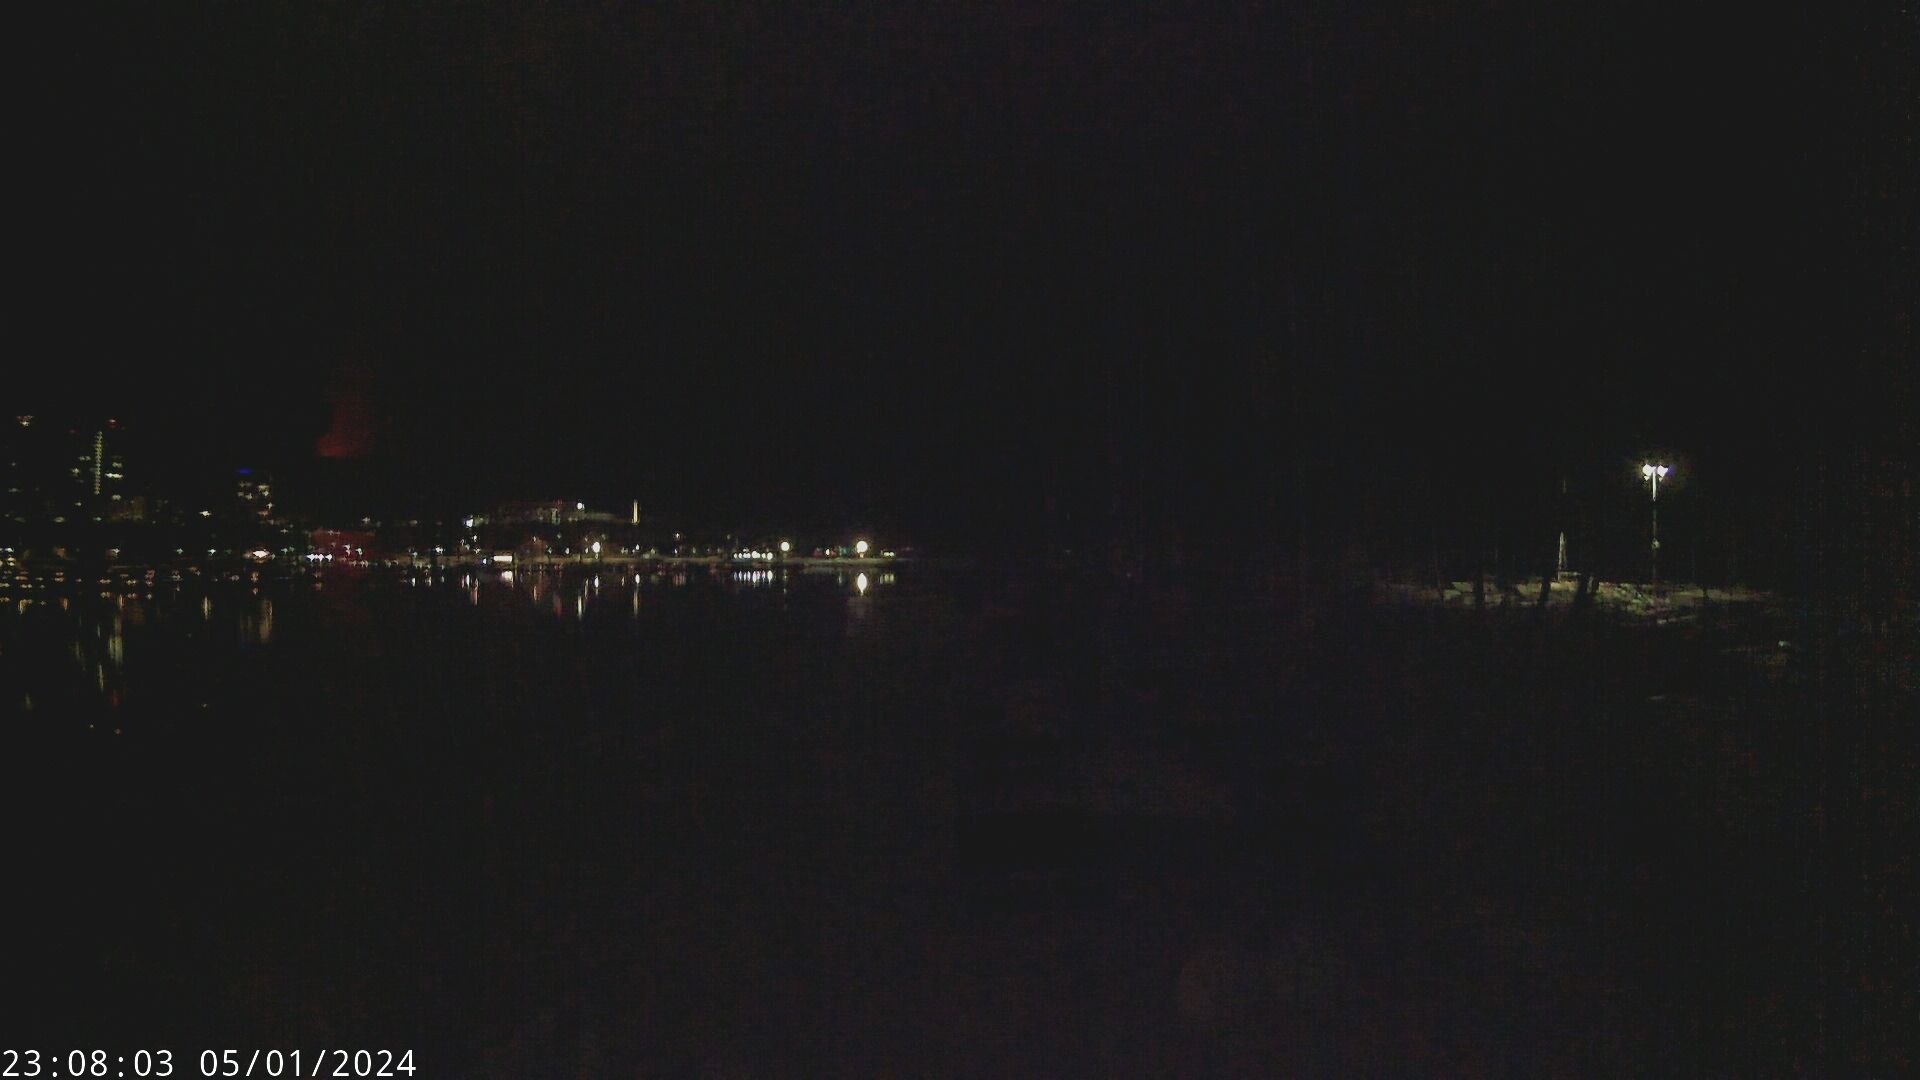 Webcam of the Sailing Center docks